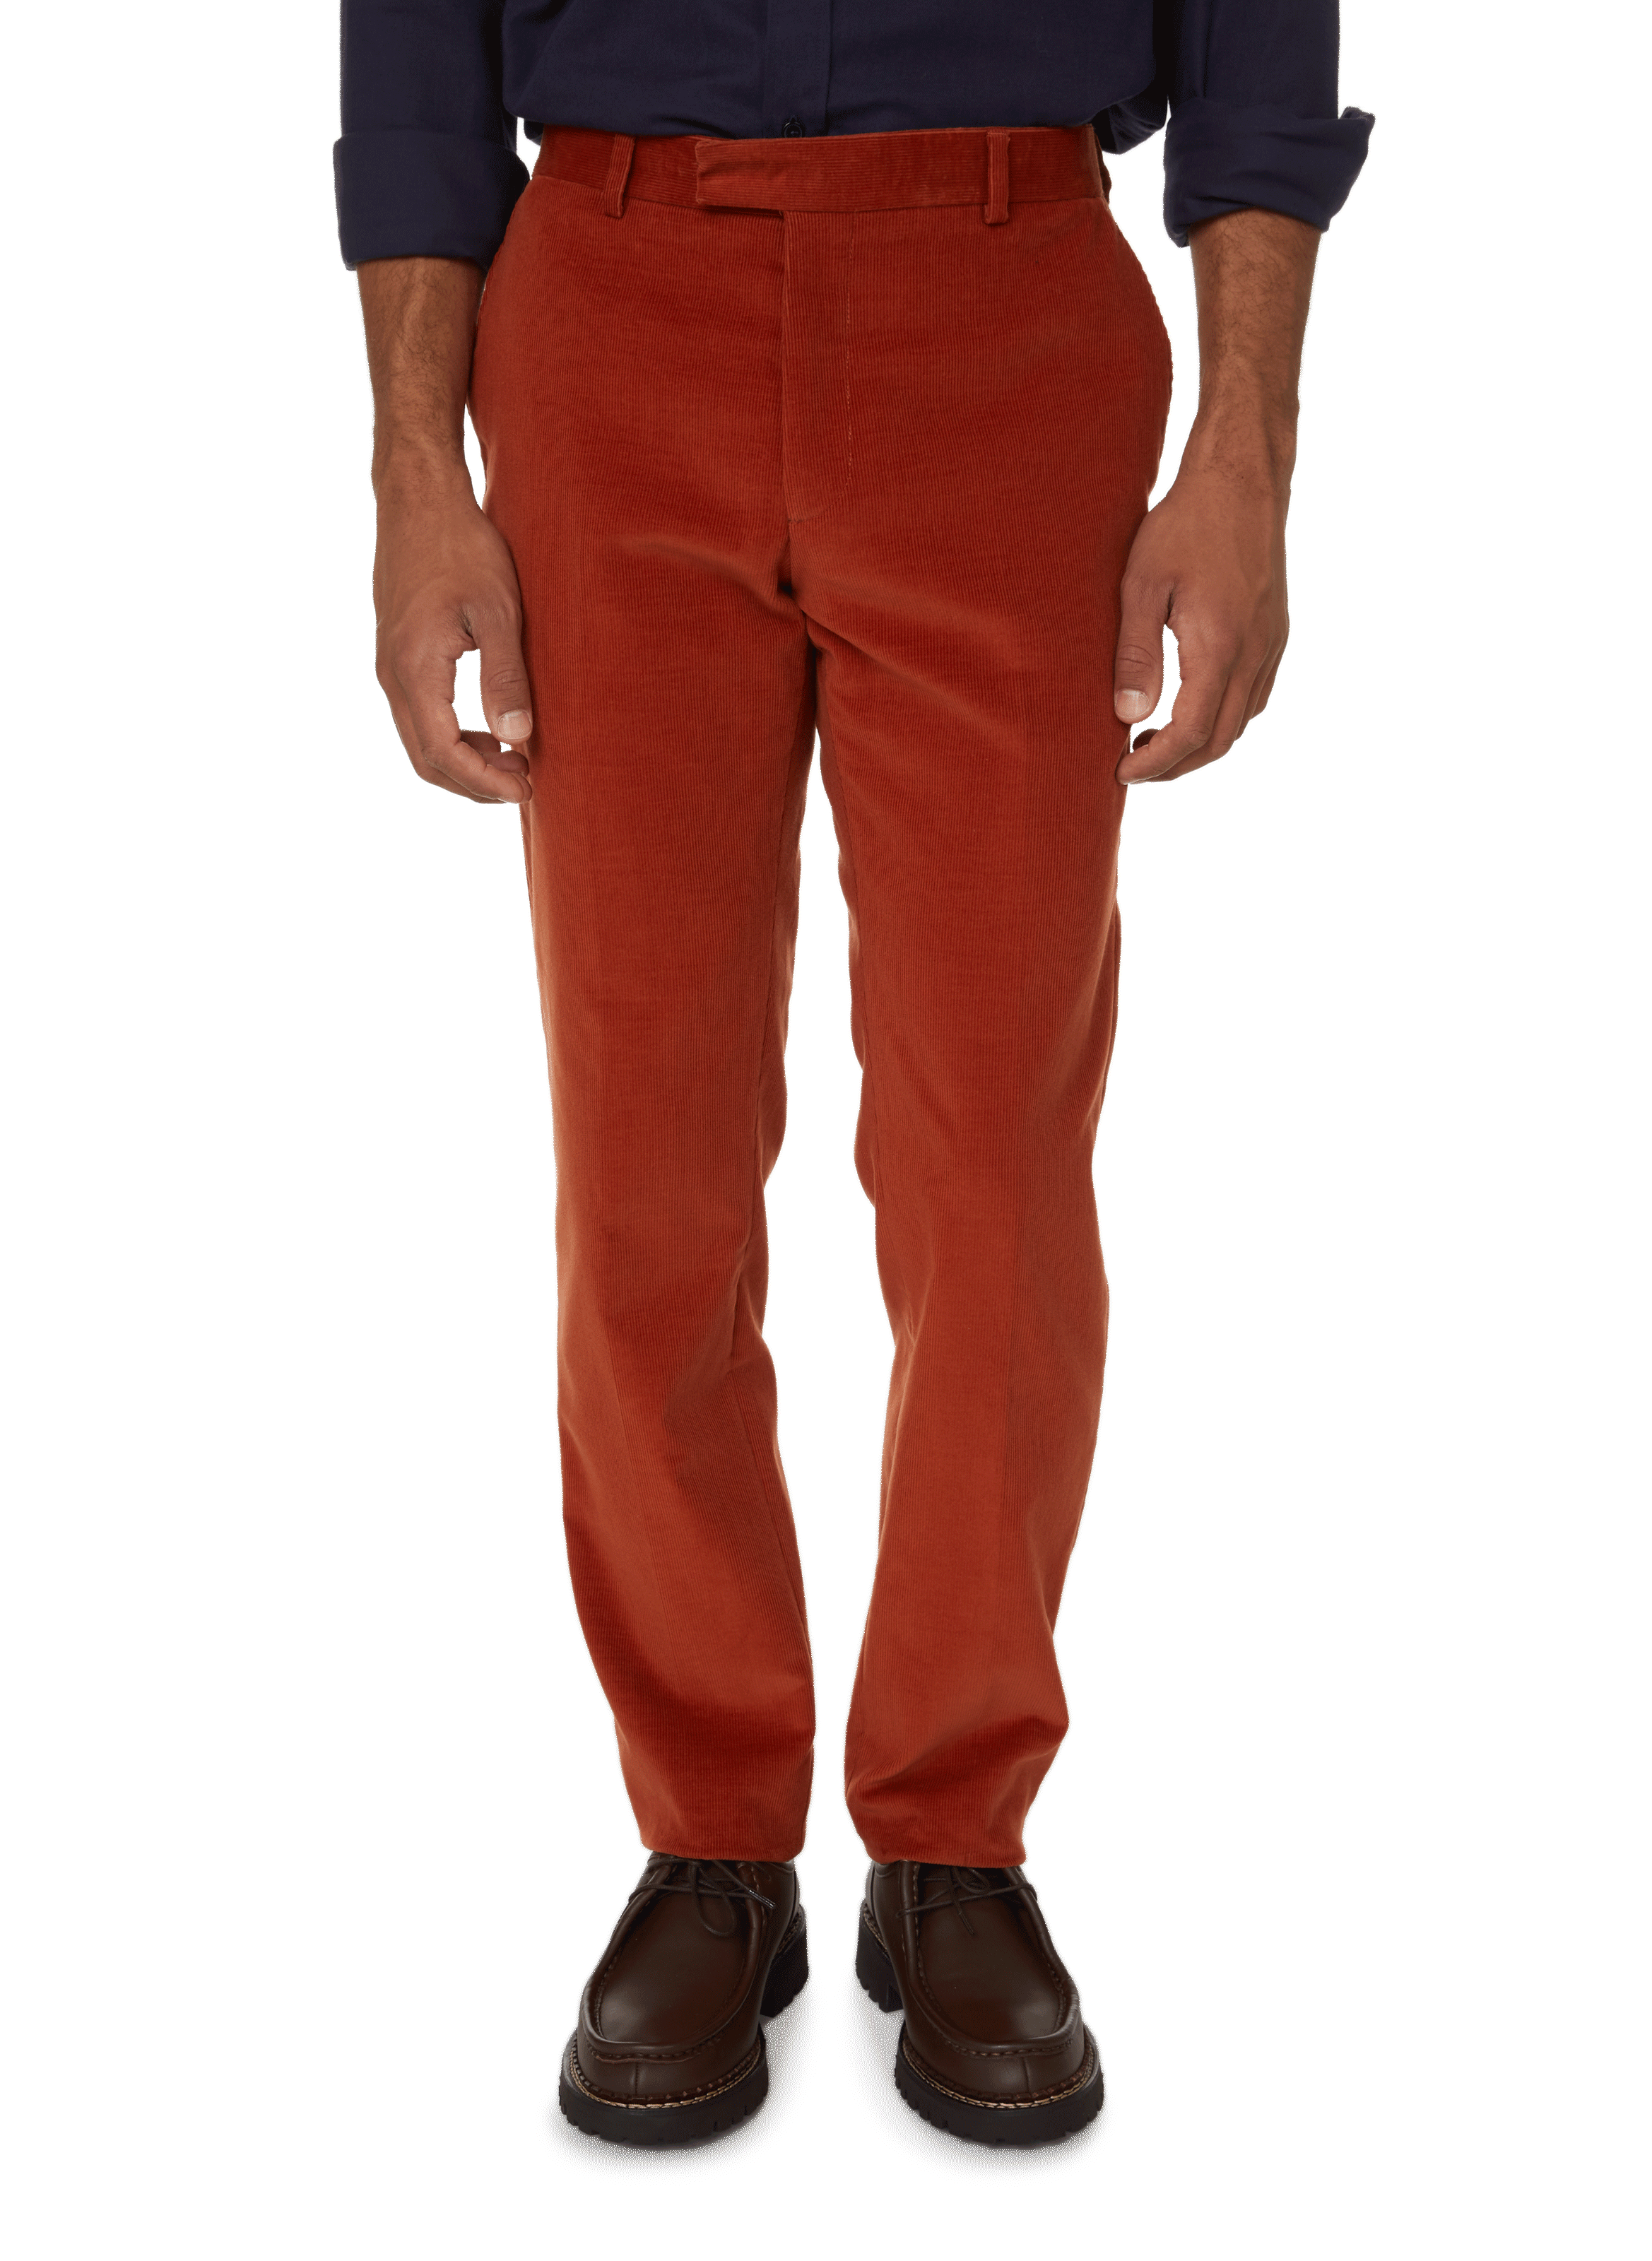 Men's Red Cord Trousers | Wardrobe Essential | Gurteen Menswear